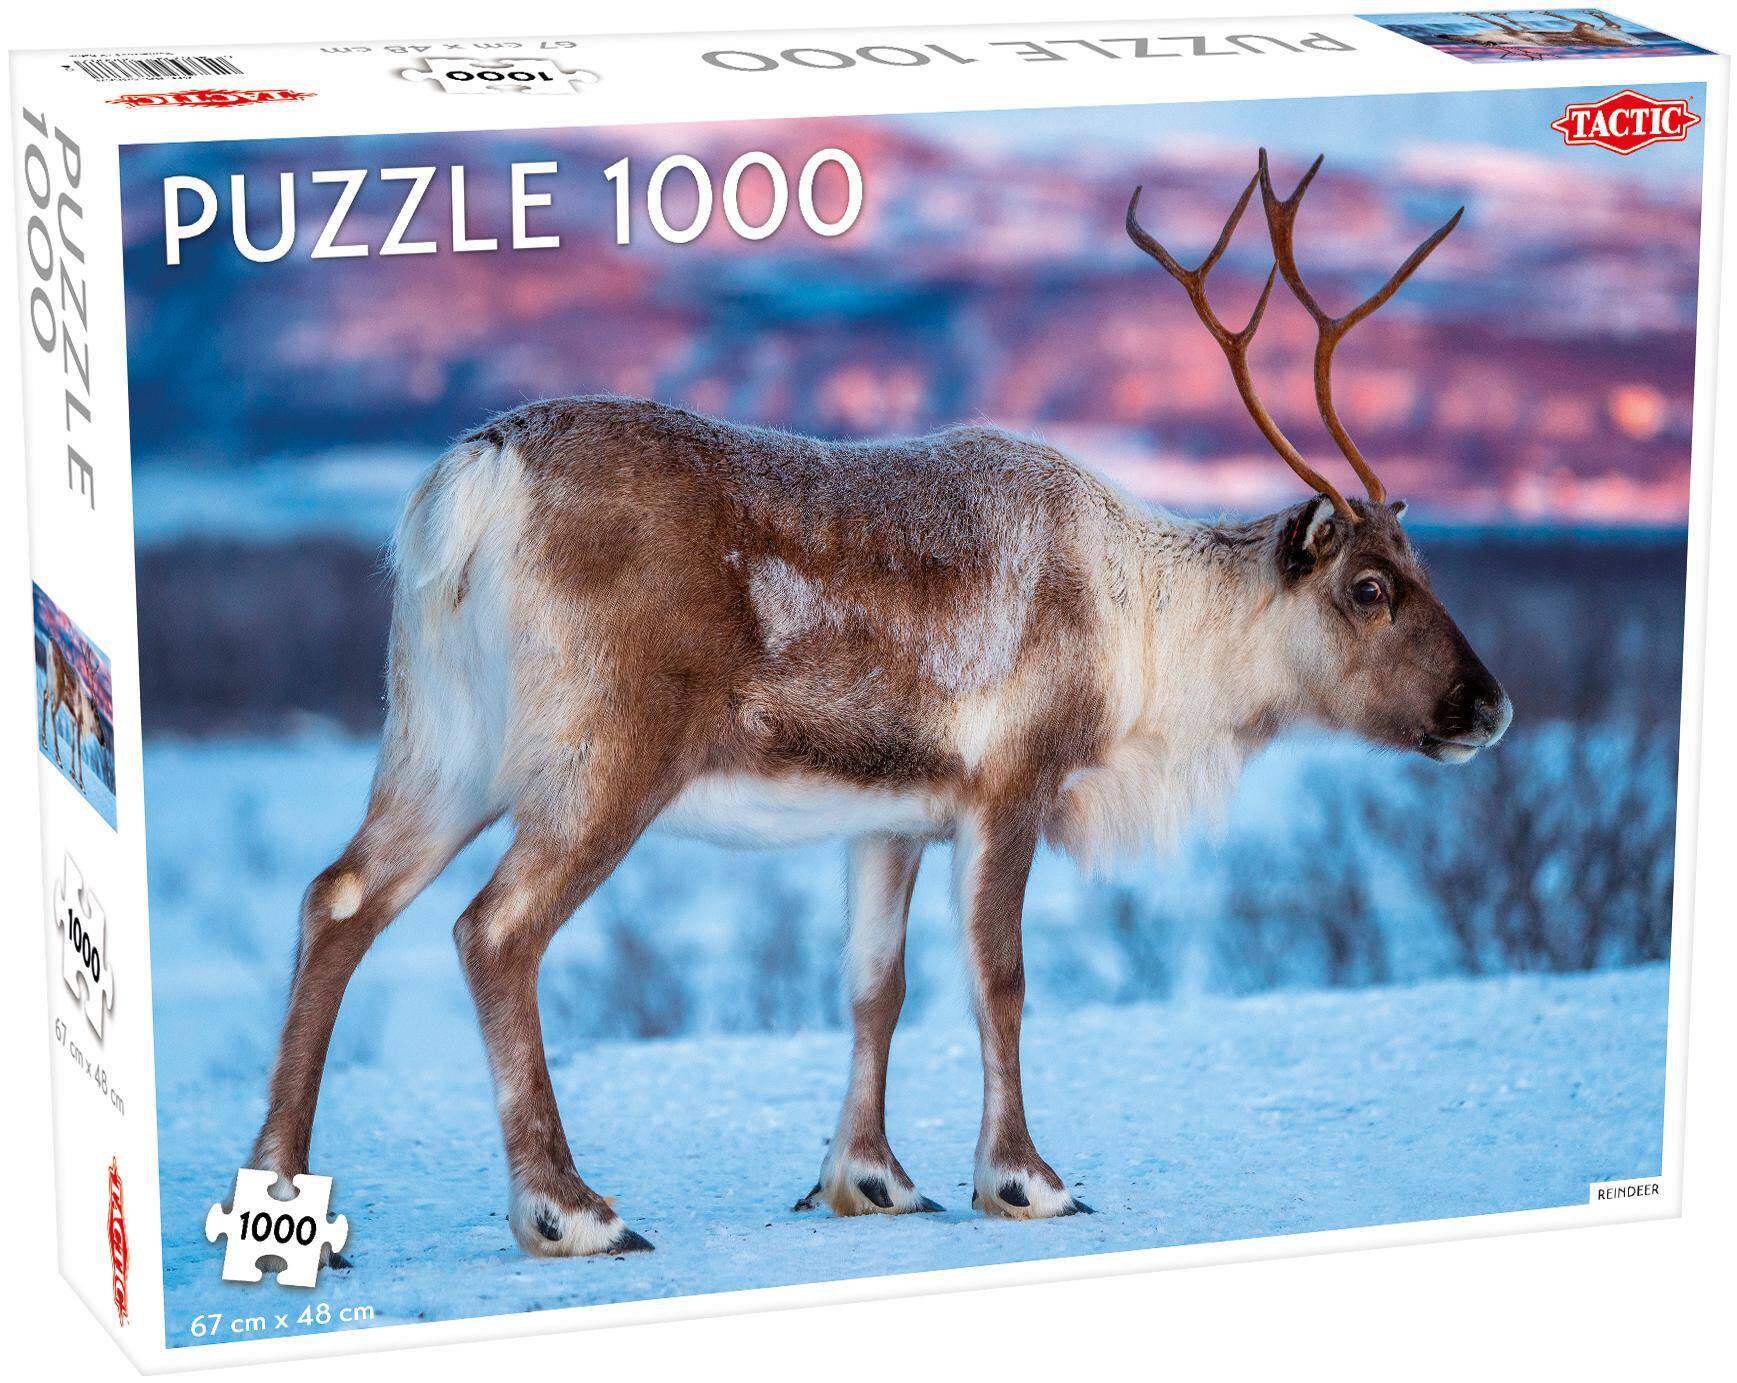 Puzzle 1000 Reindeer